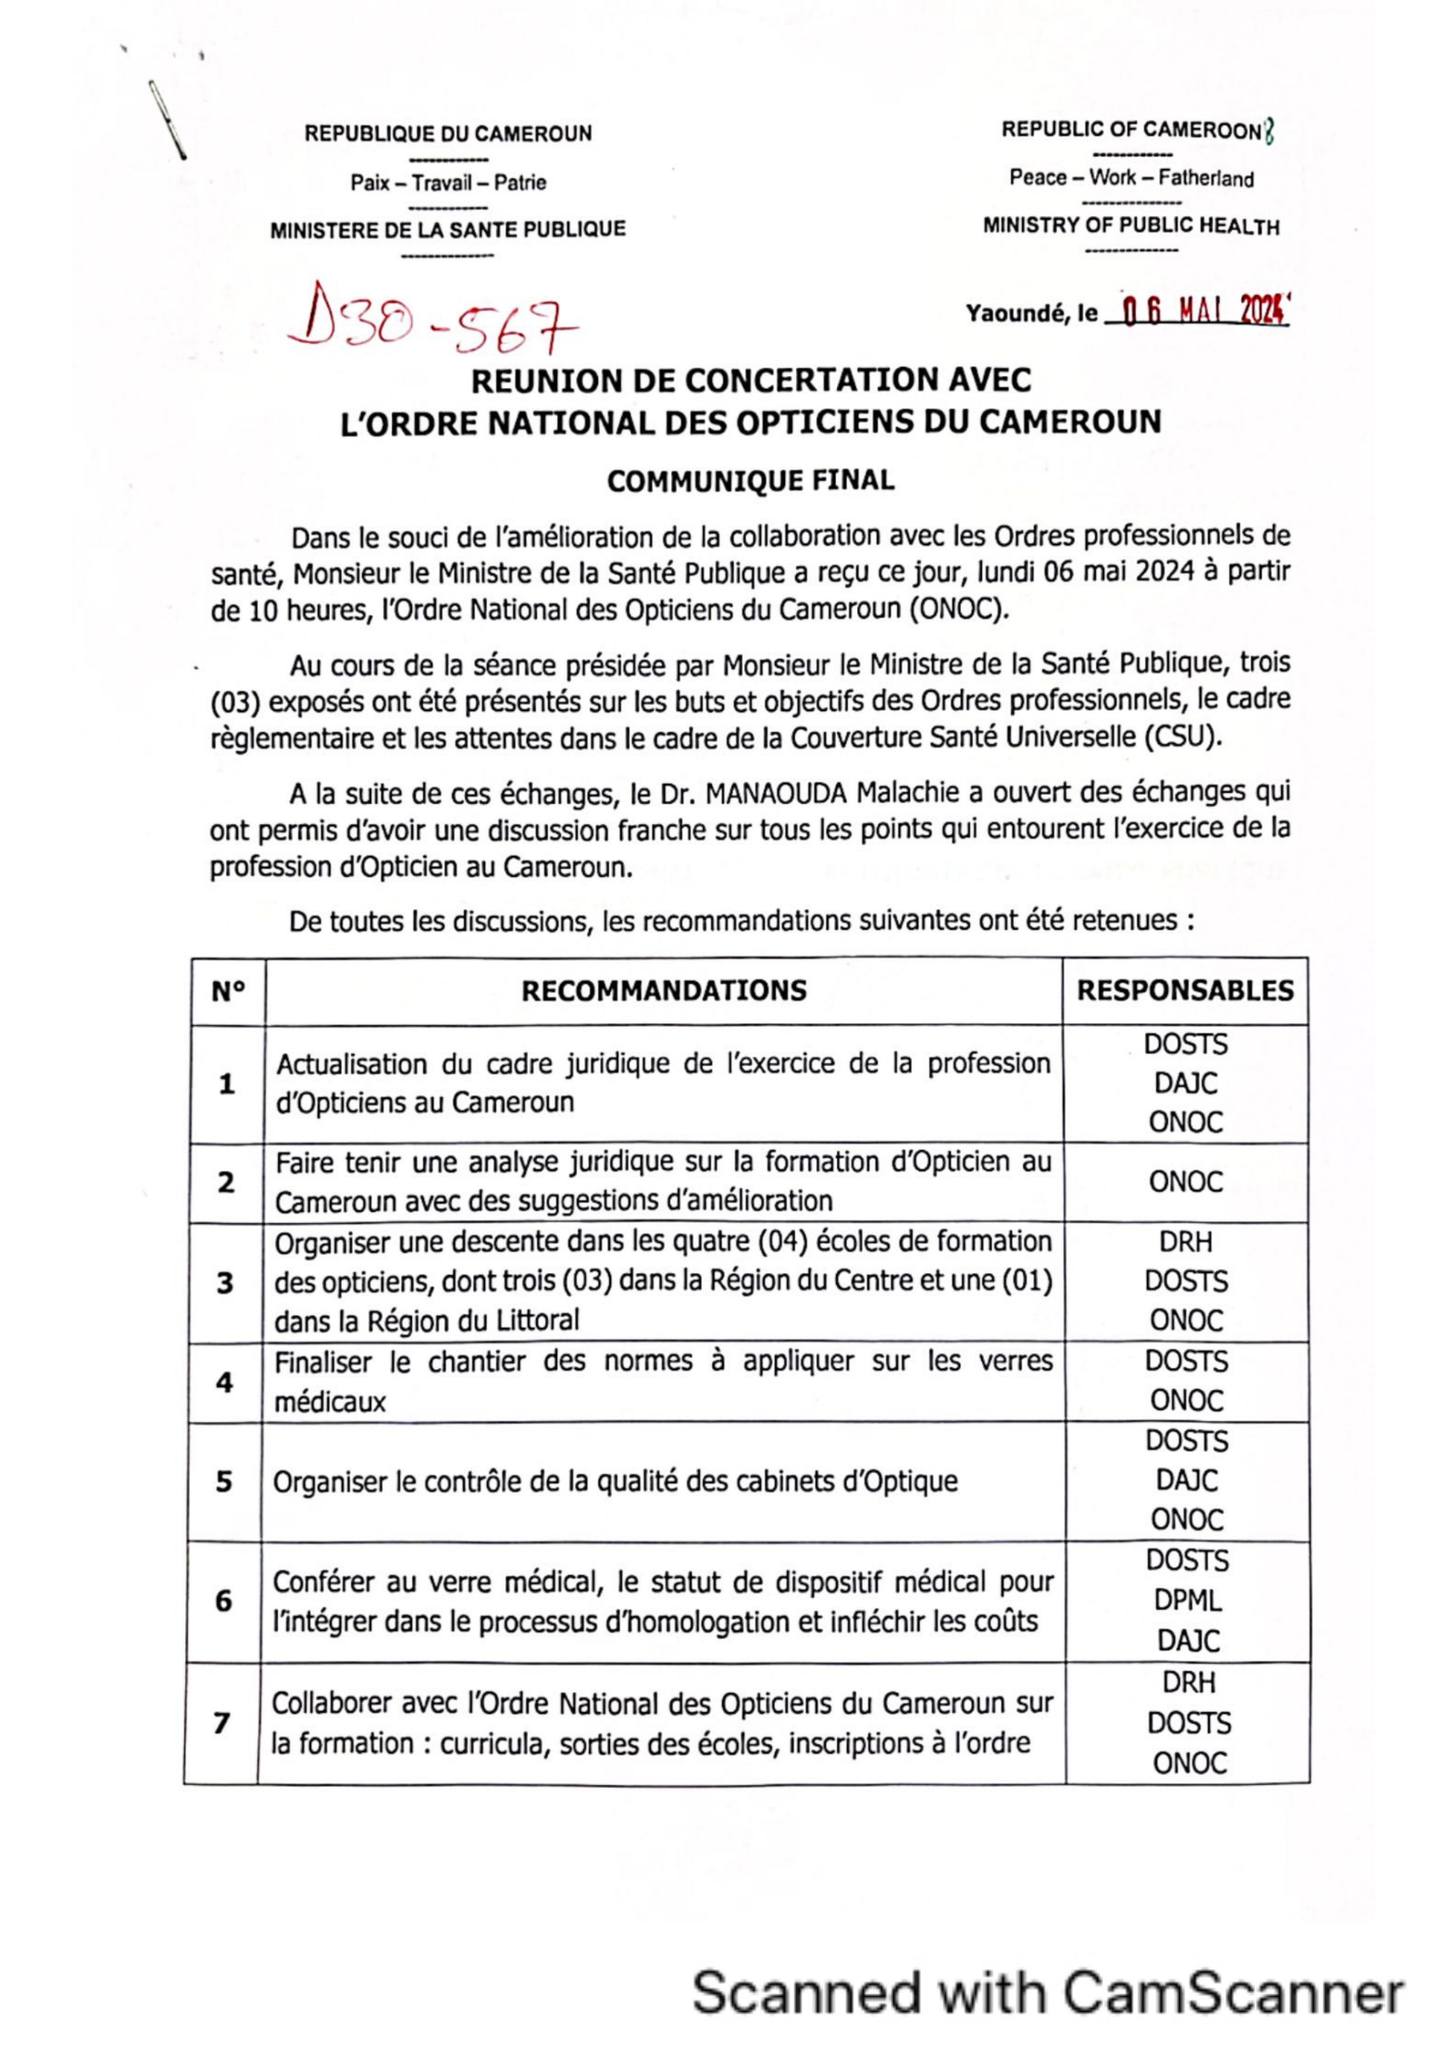 Communiqué Final Concertation Avec L'ordre National Des Opticiens Du Cameroun 2024